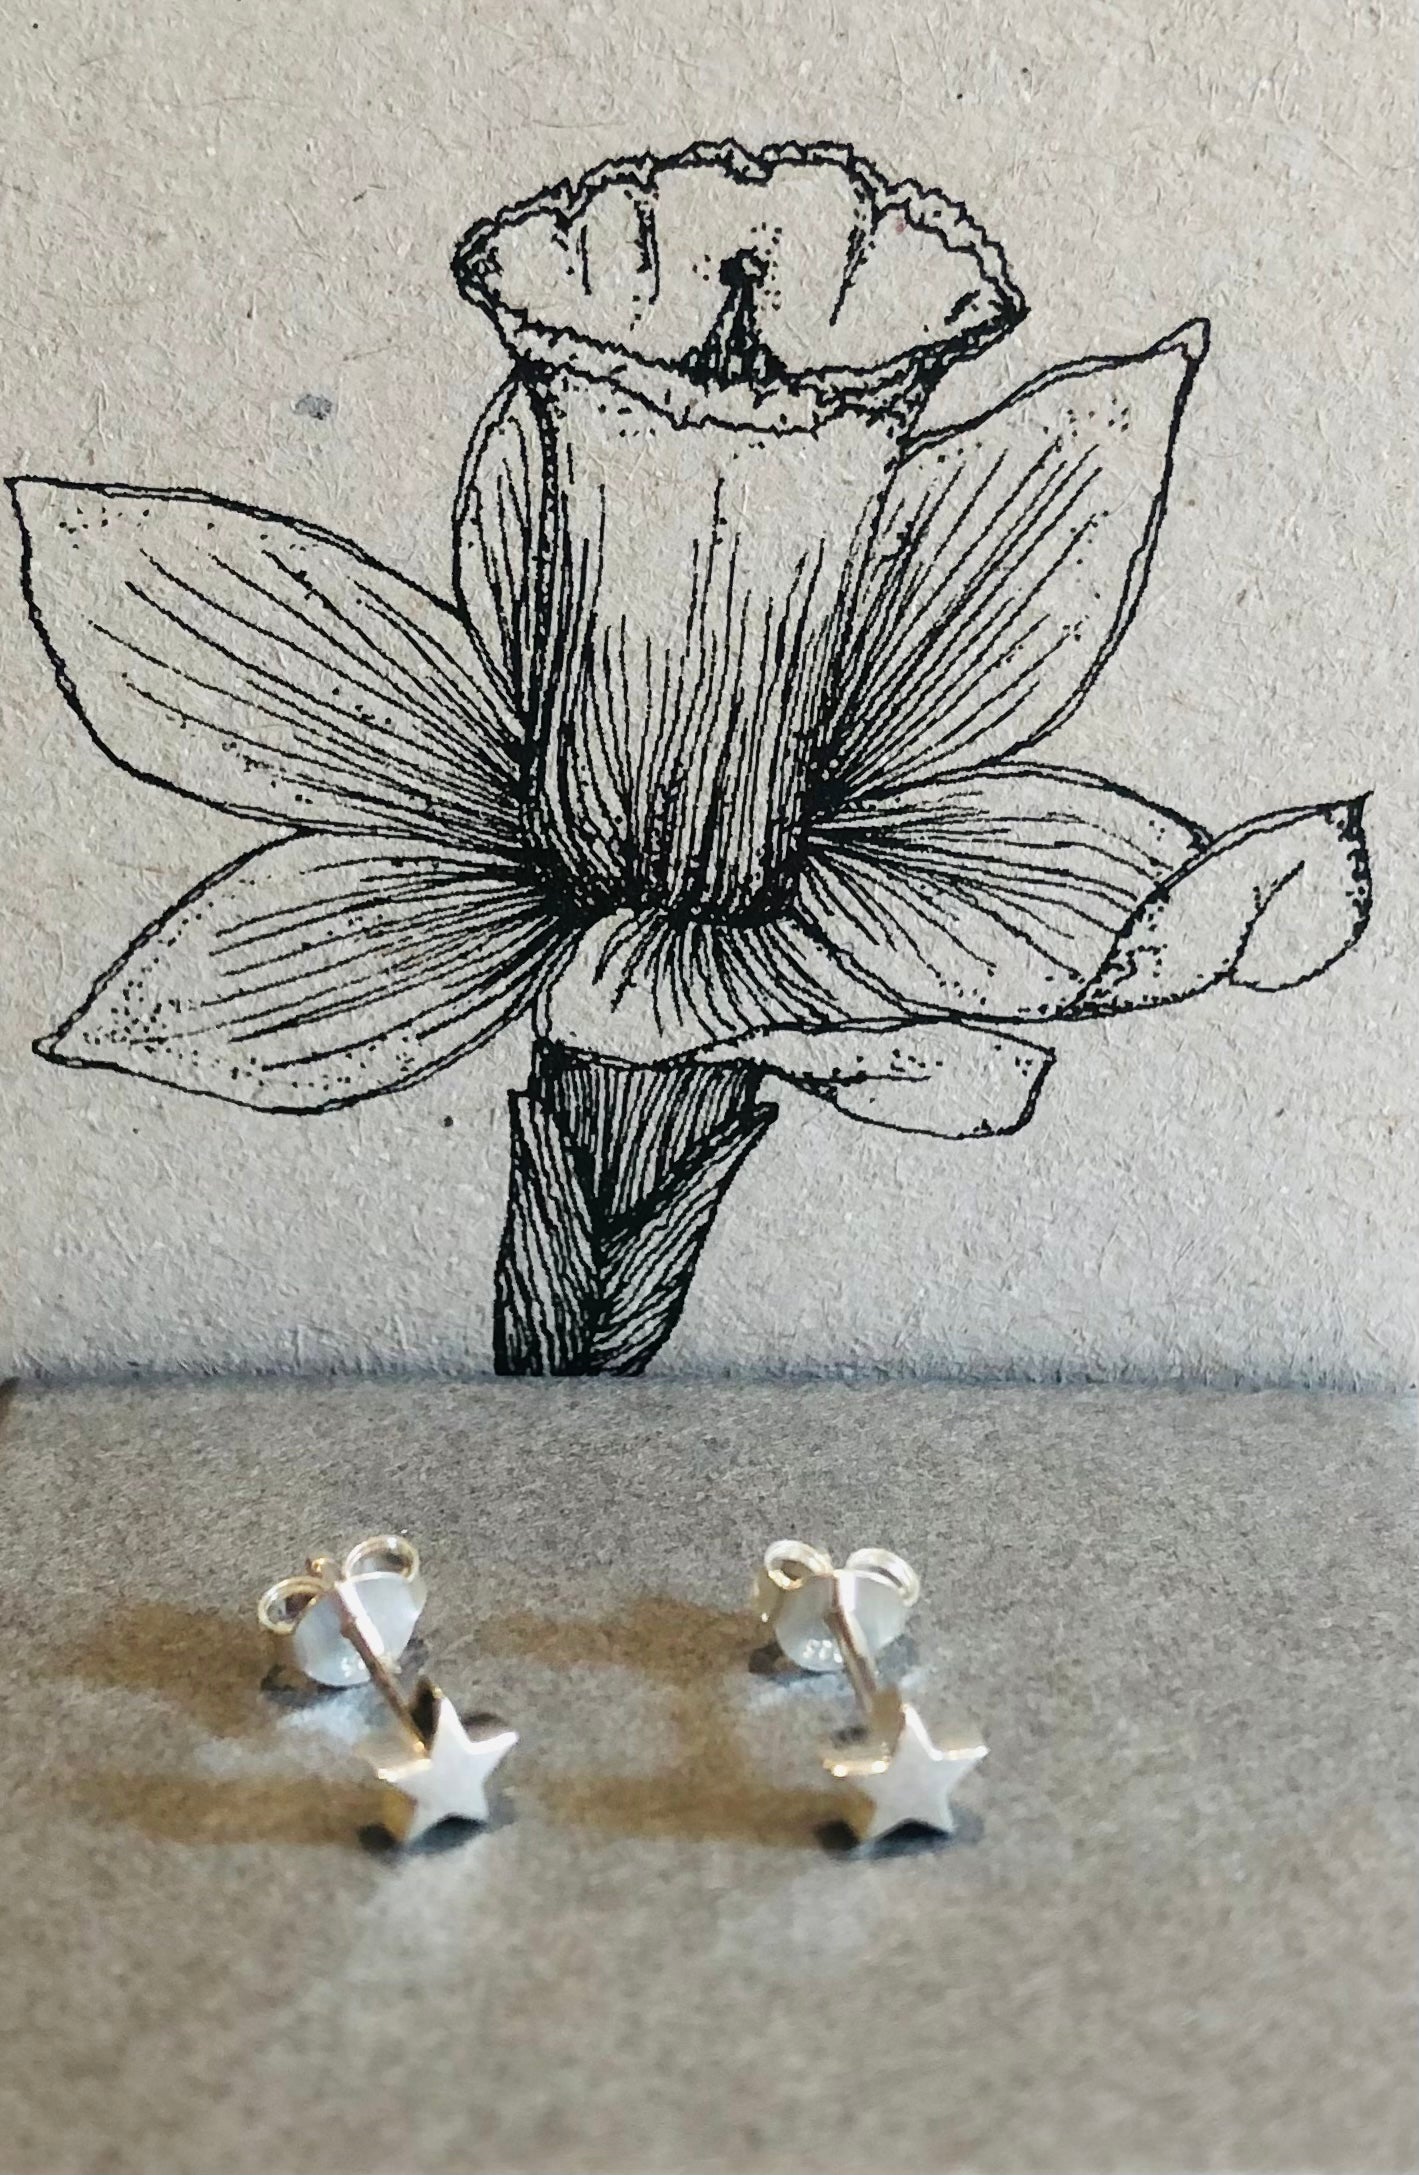 Silver star stud earrings